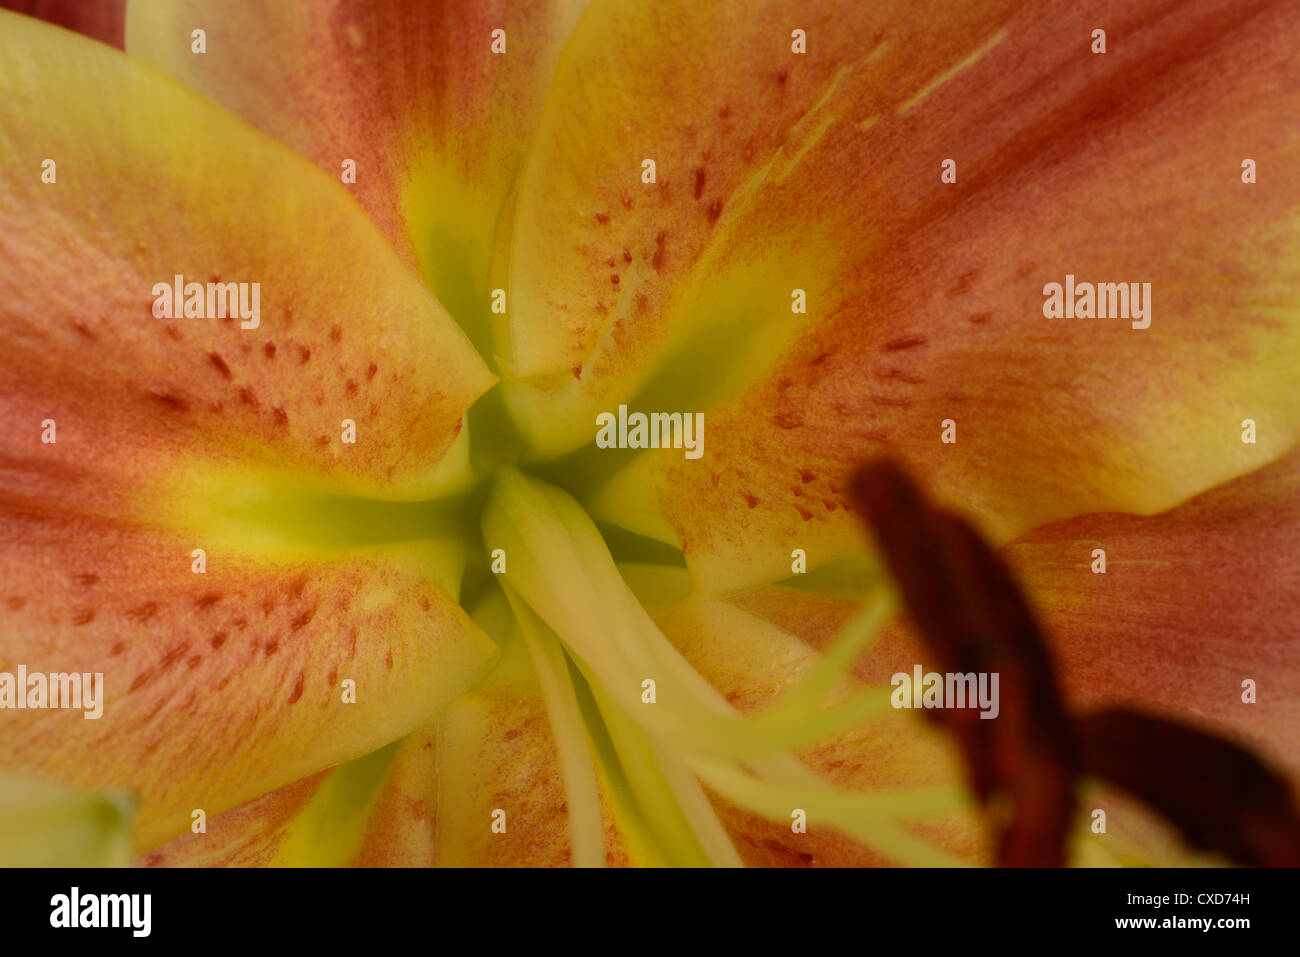 Cerca de Lily flor con el polen de las anteras, mostrando los estilos y emergentes. Foto de stock